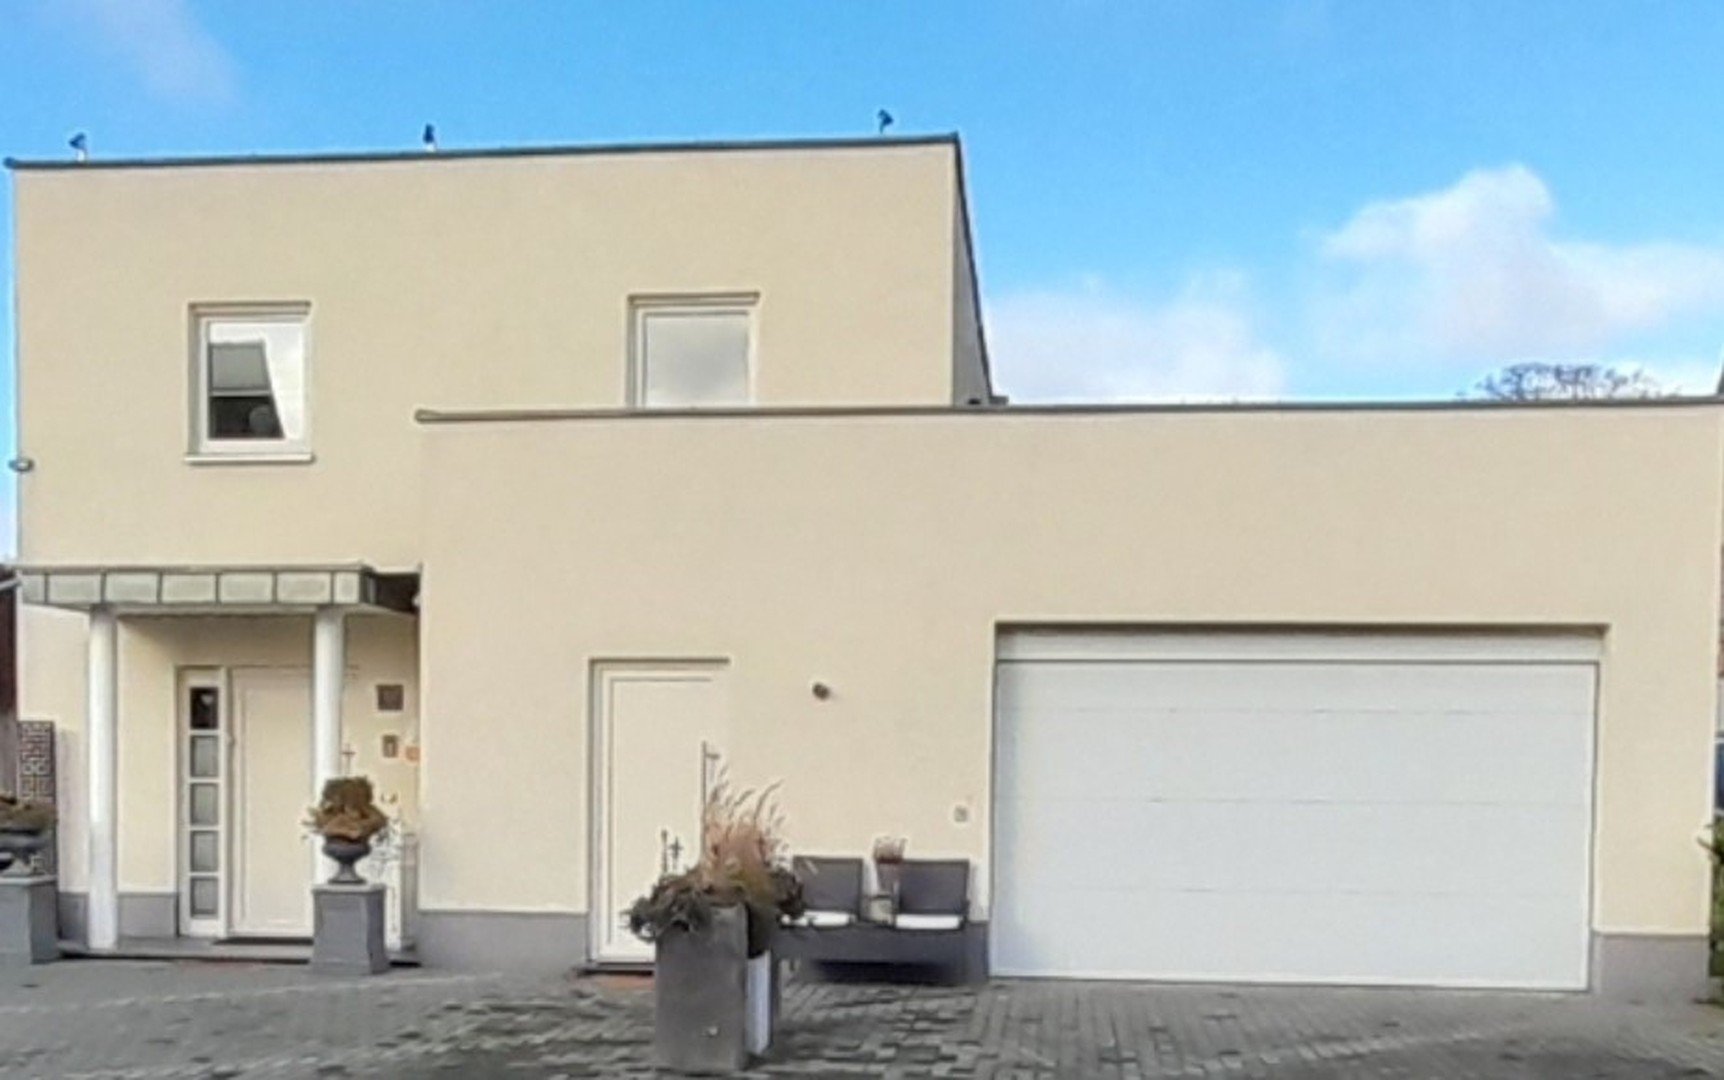 Exclusives Einfamilienhaus in ruhiger Wohngegend von Gronau-Epe